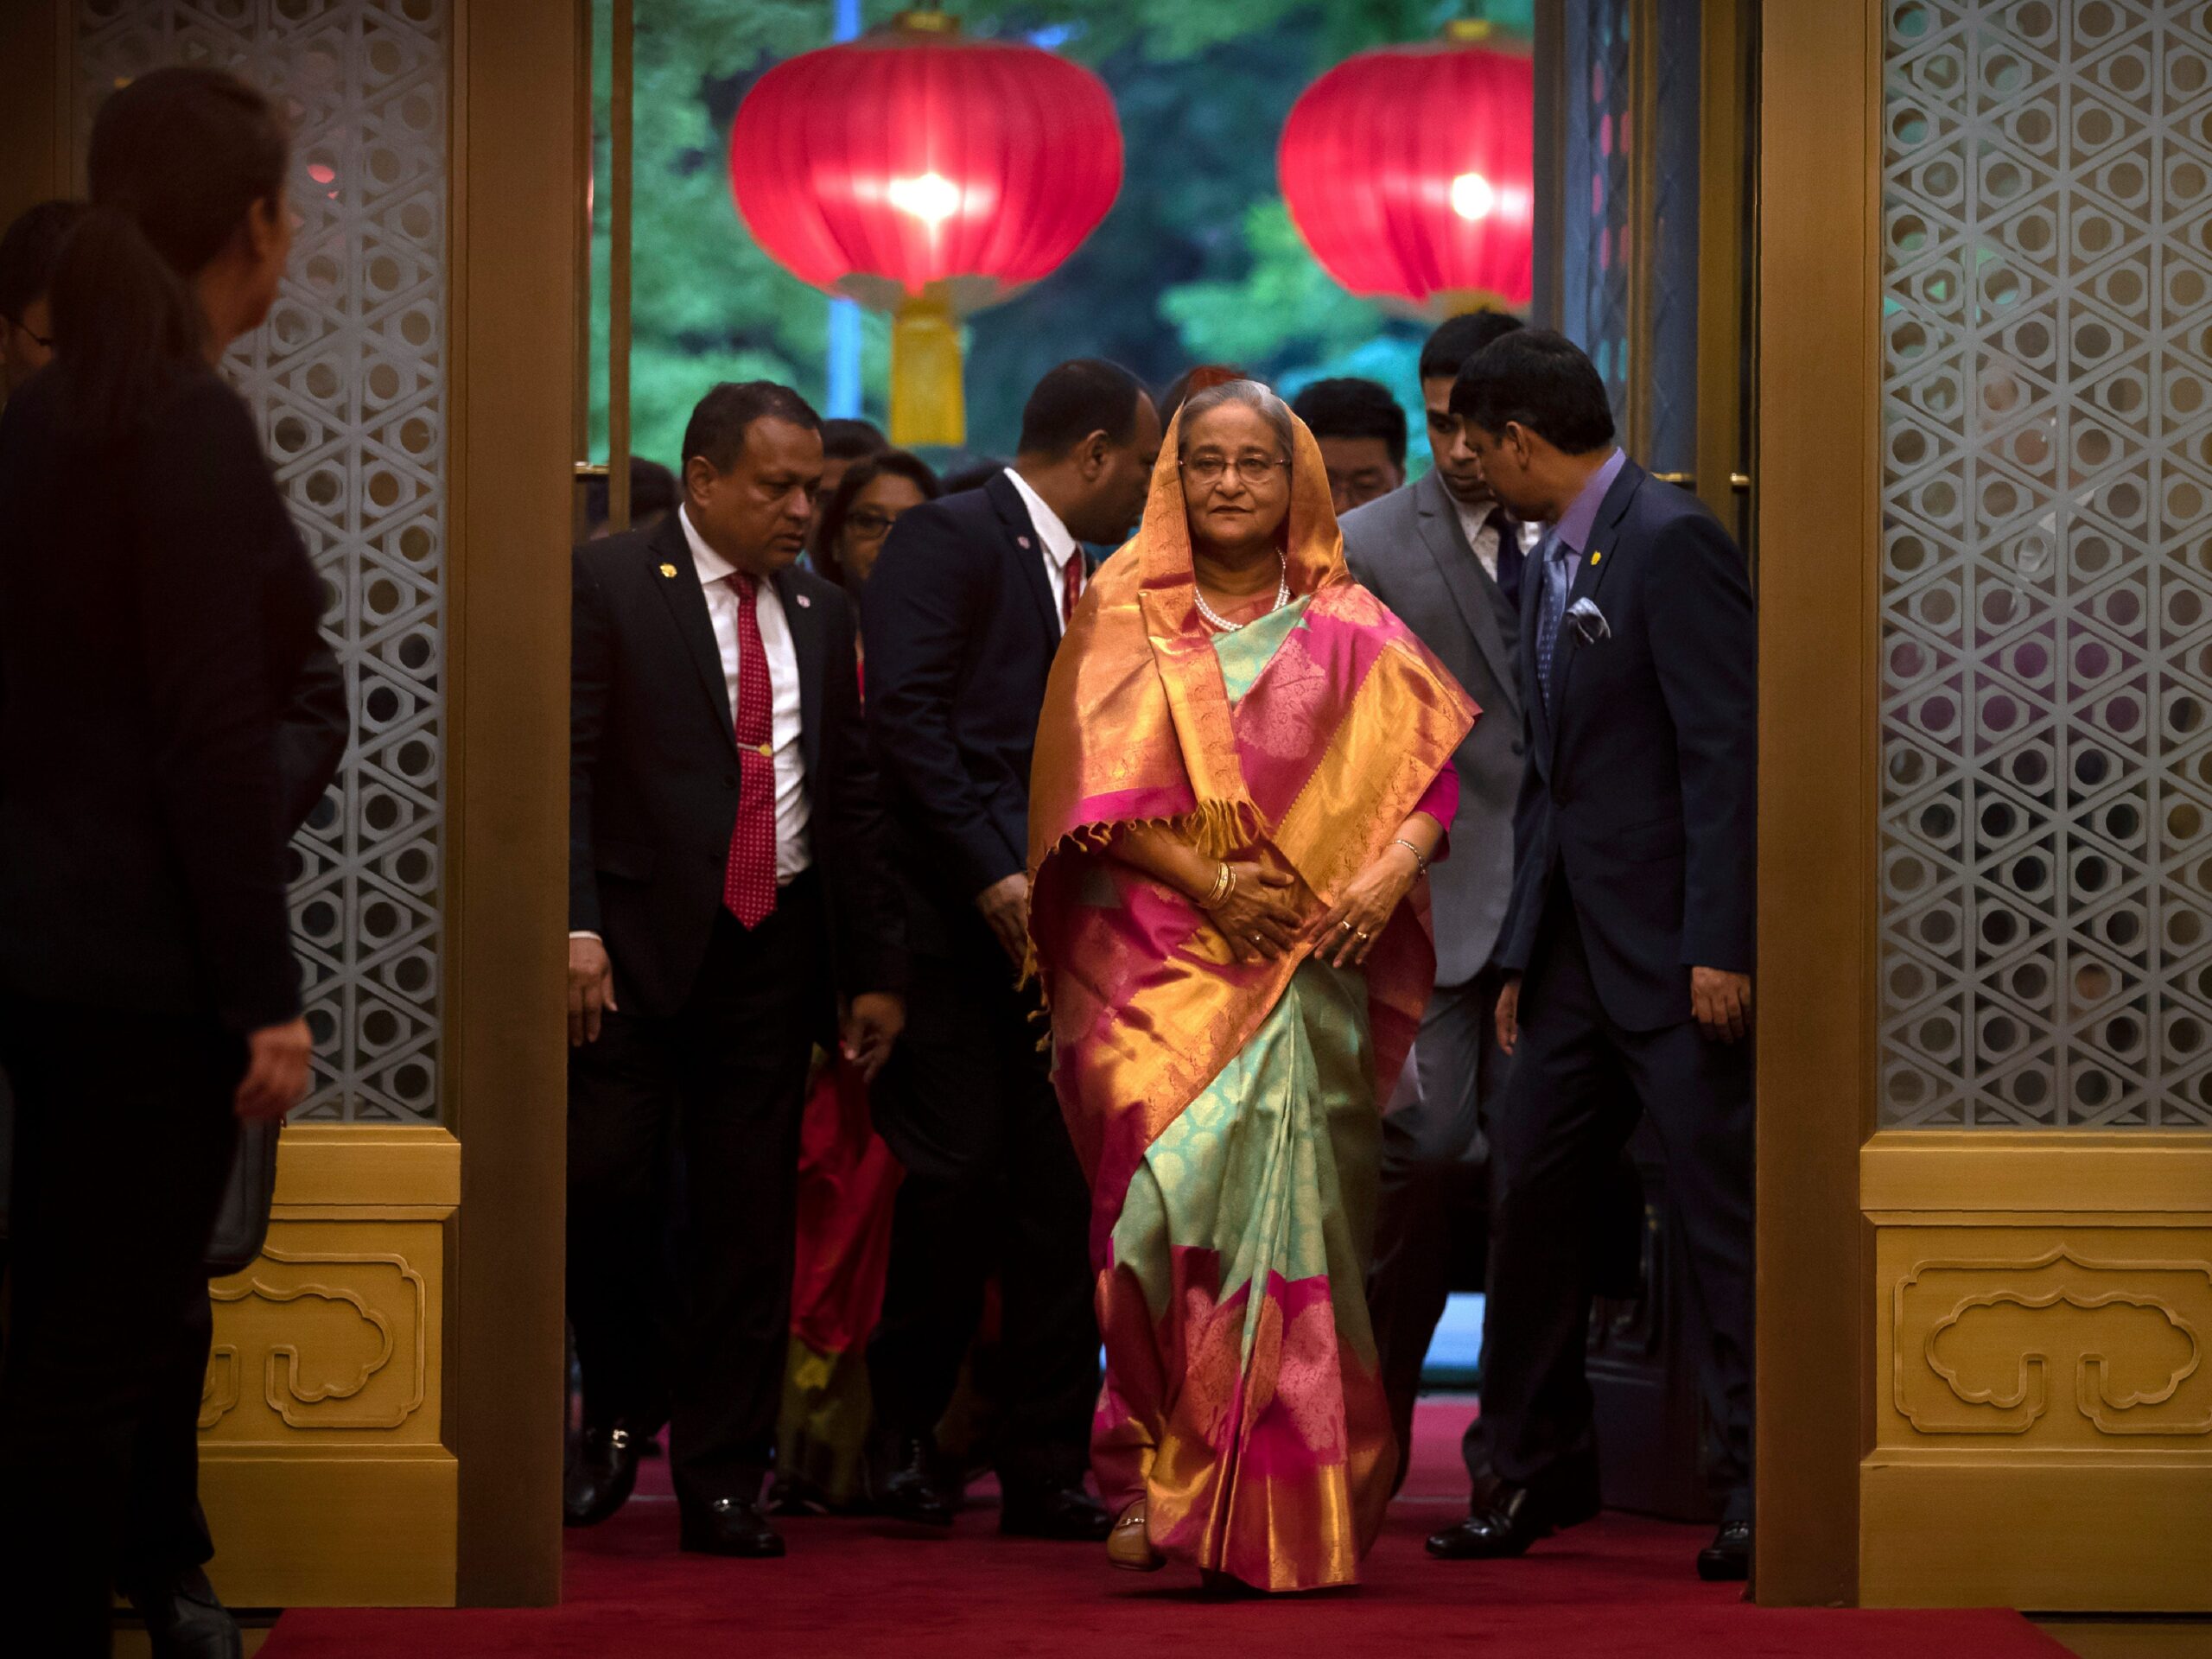 De premier van Bangladesh, Sheikh Hasina, komt aan voor een ontmoeting met de Chinese president Xi Jinping in Peking, China.